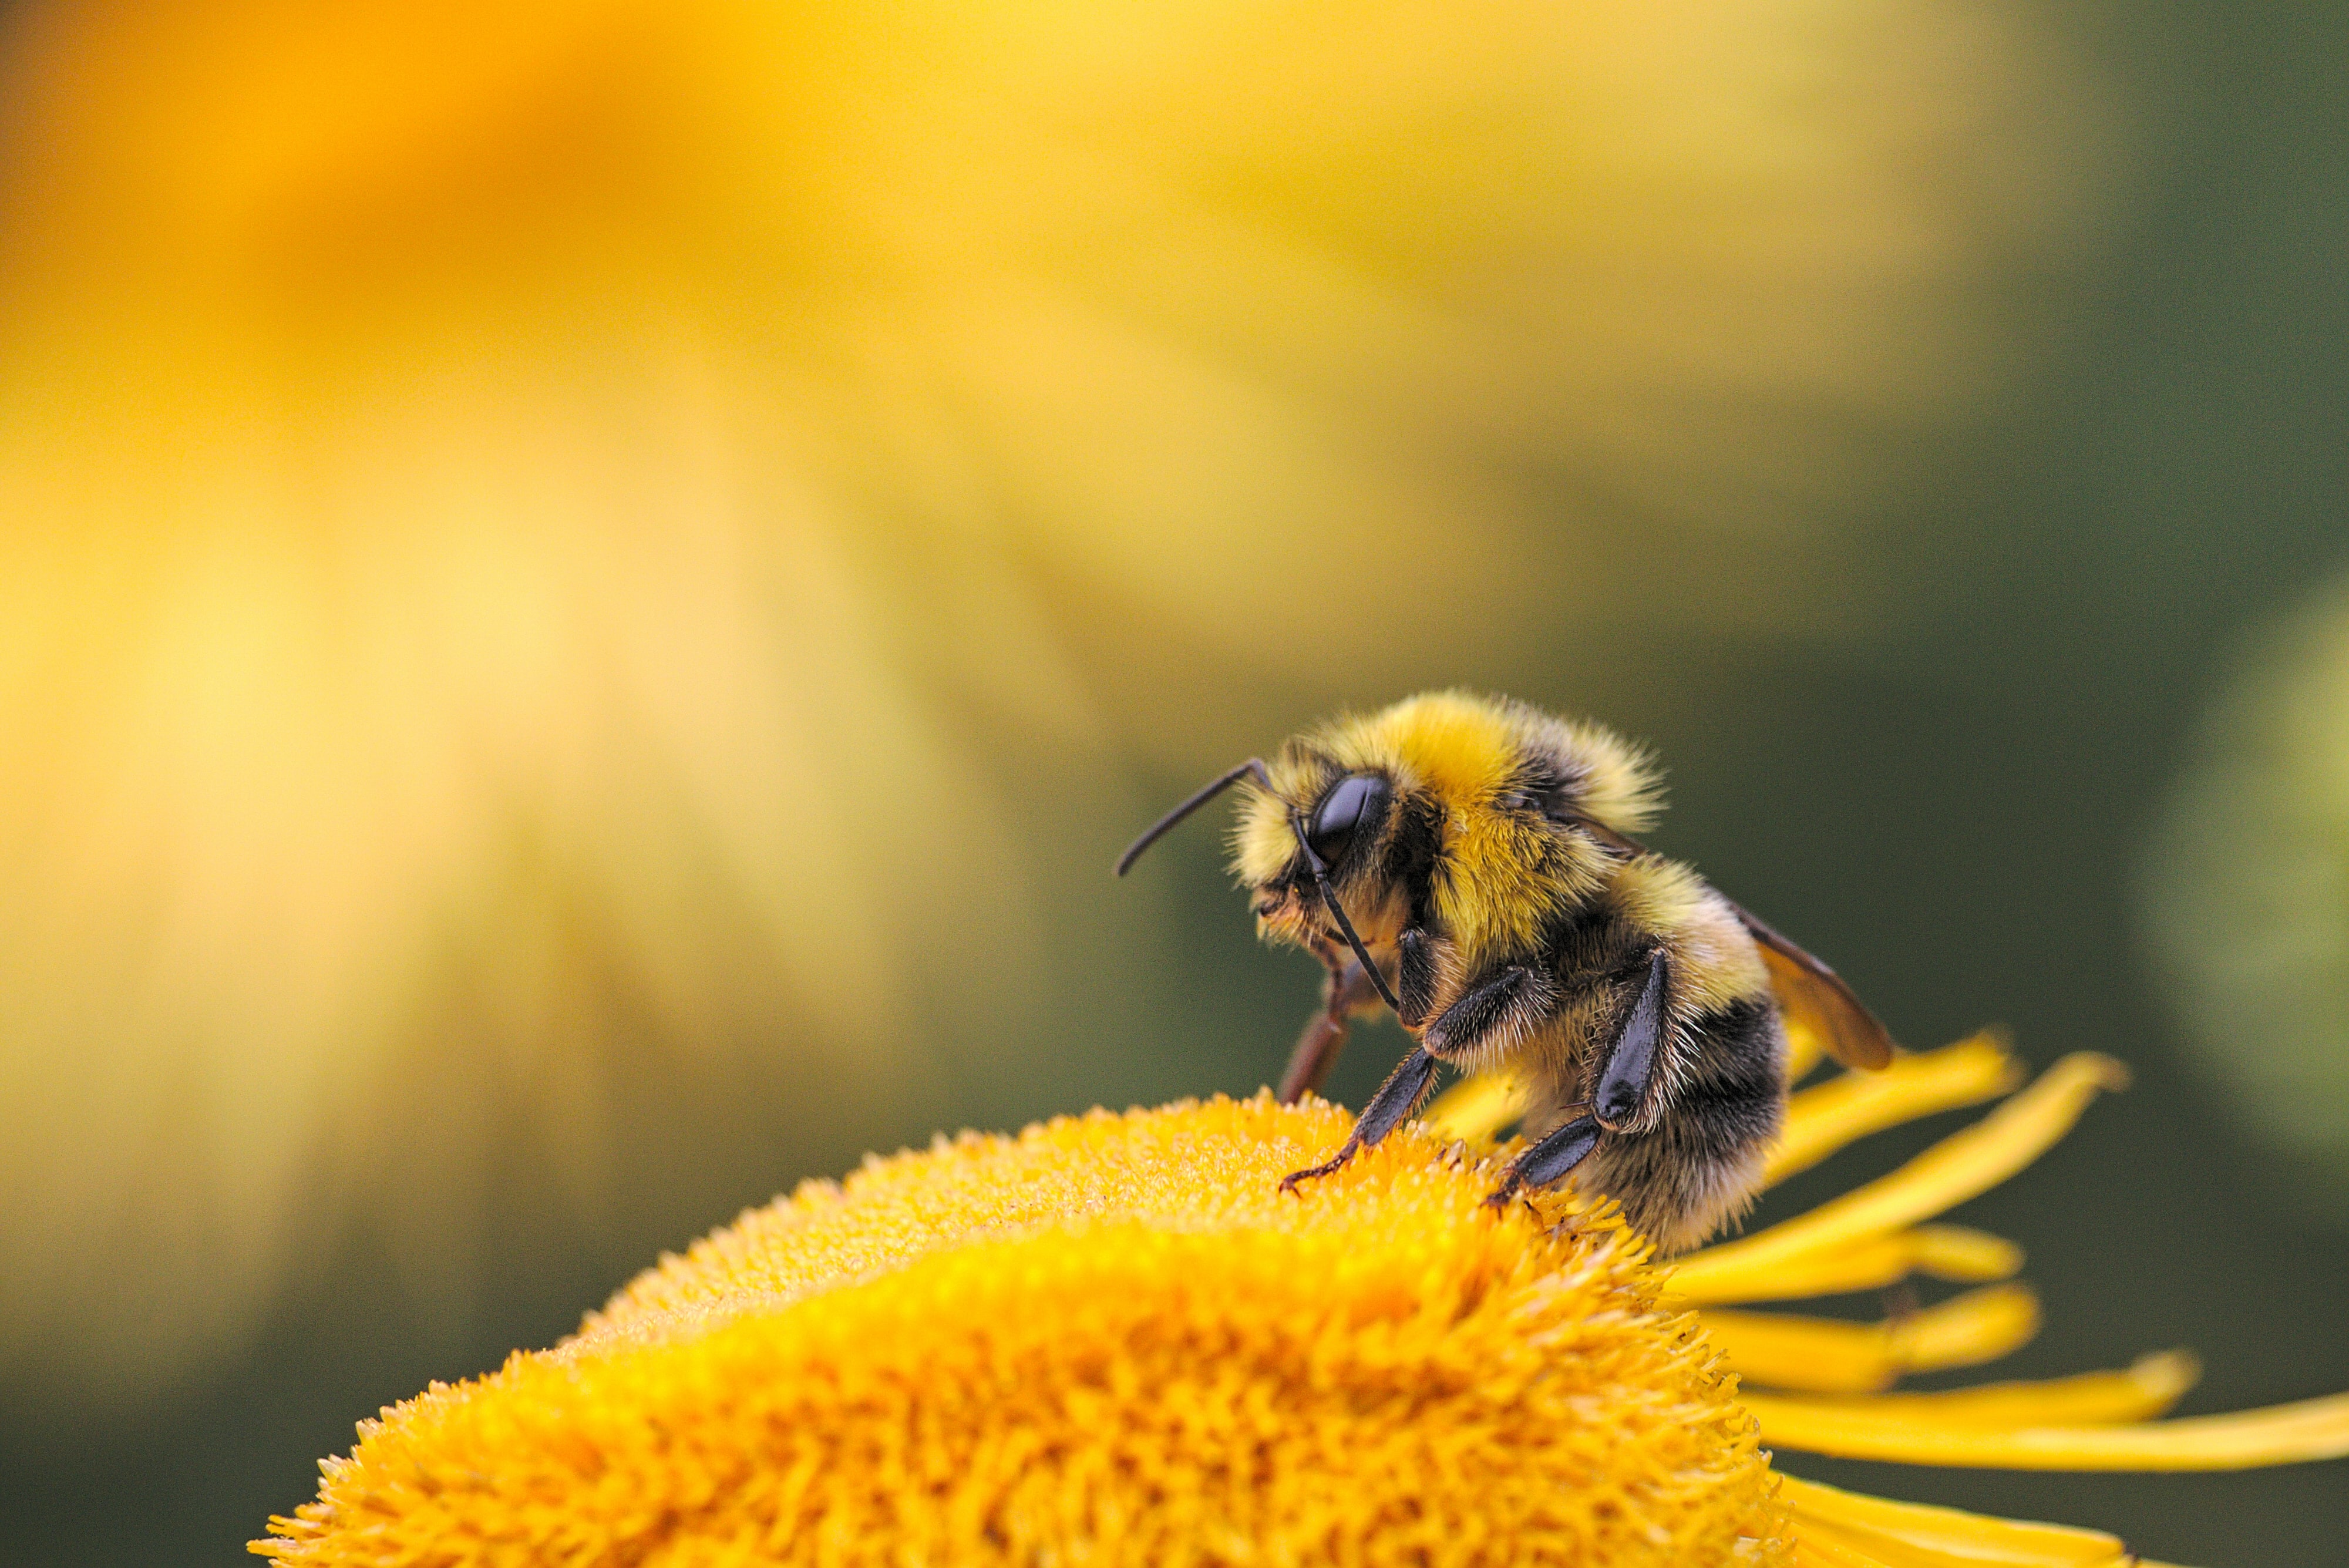 Eine Biene sitzt auf einer gelben Blume. Im Hintergrund sind unscharf weitere gelbe Blumen zu erkennen.